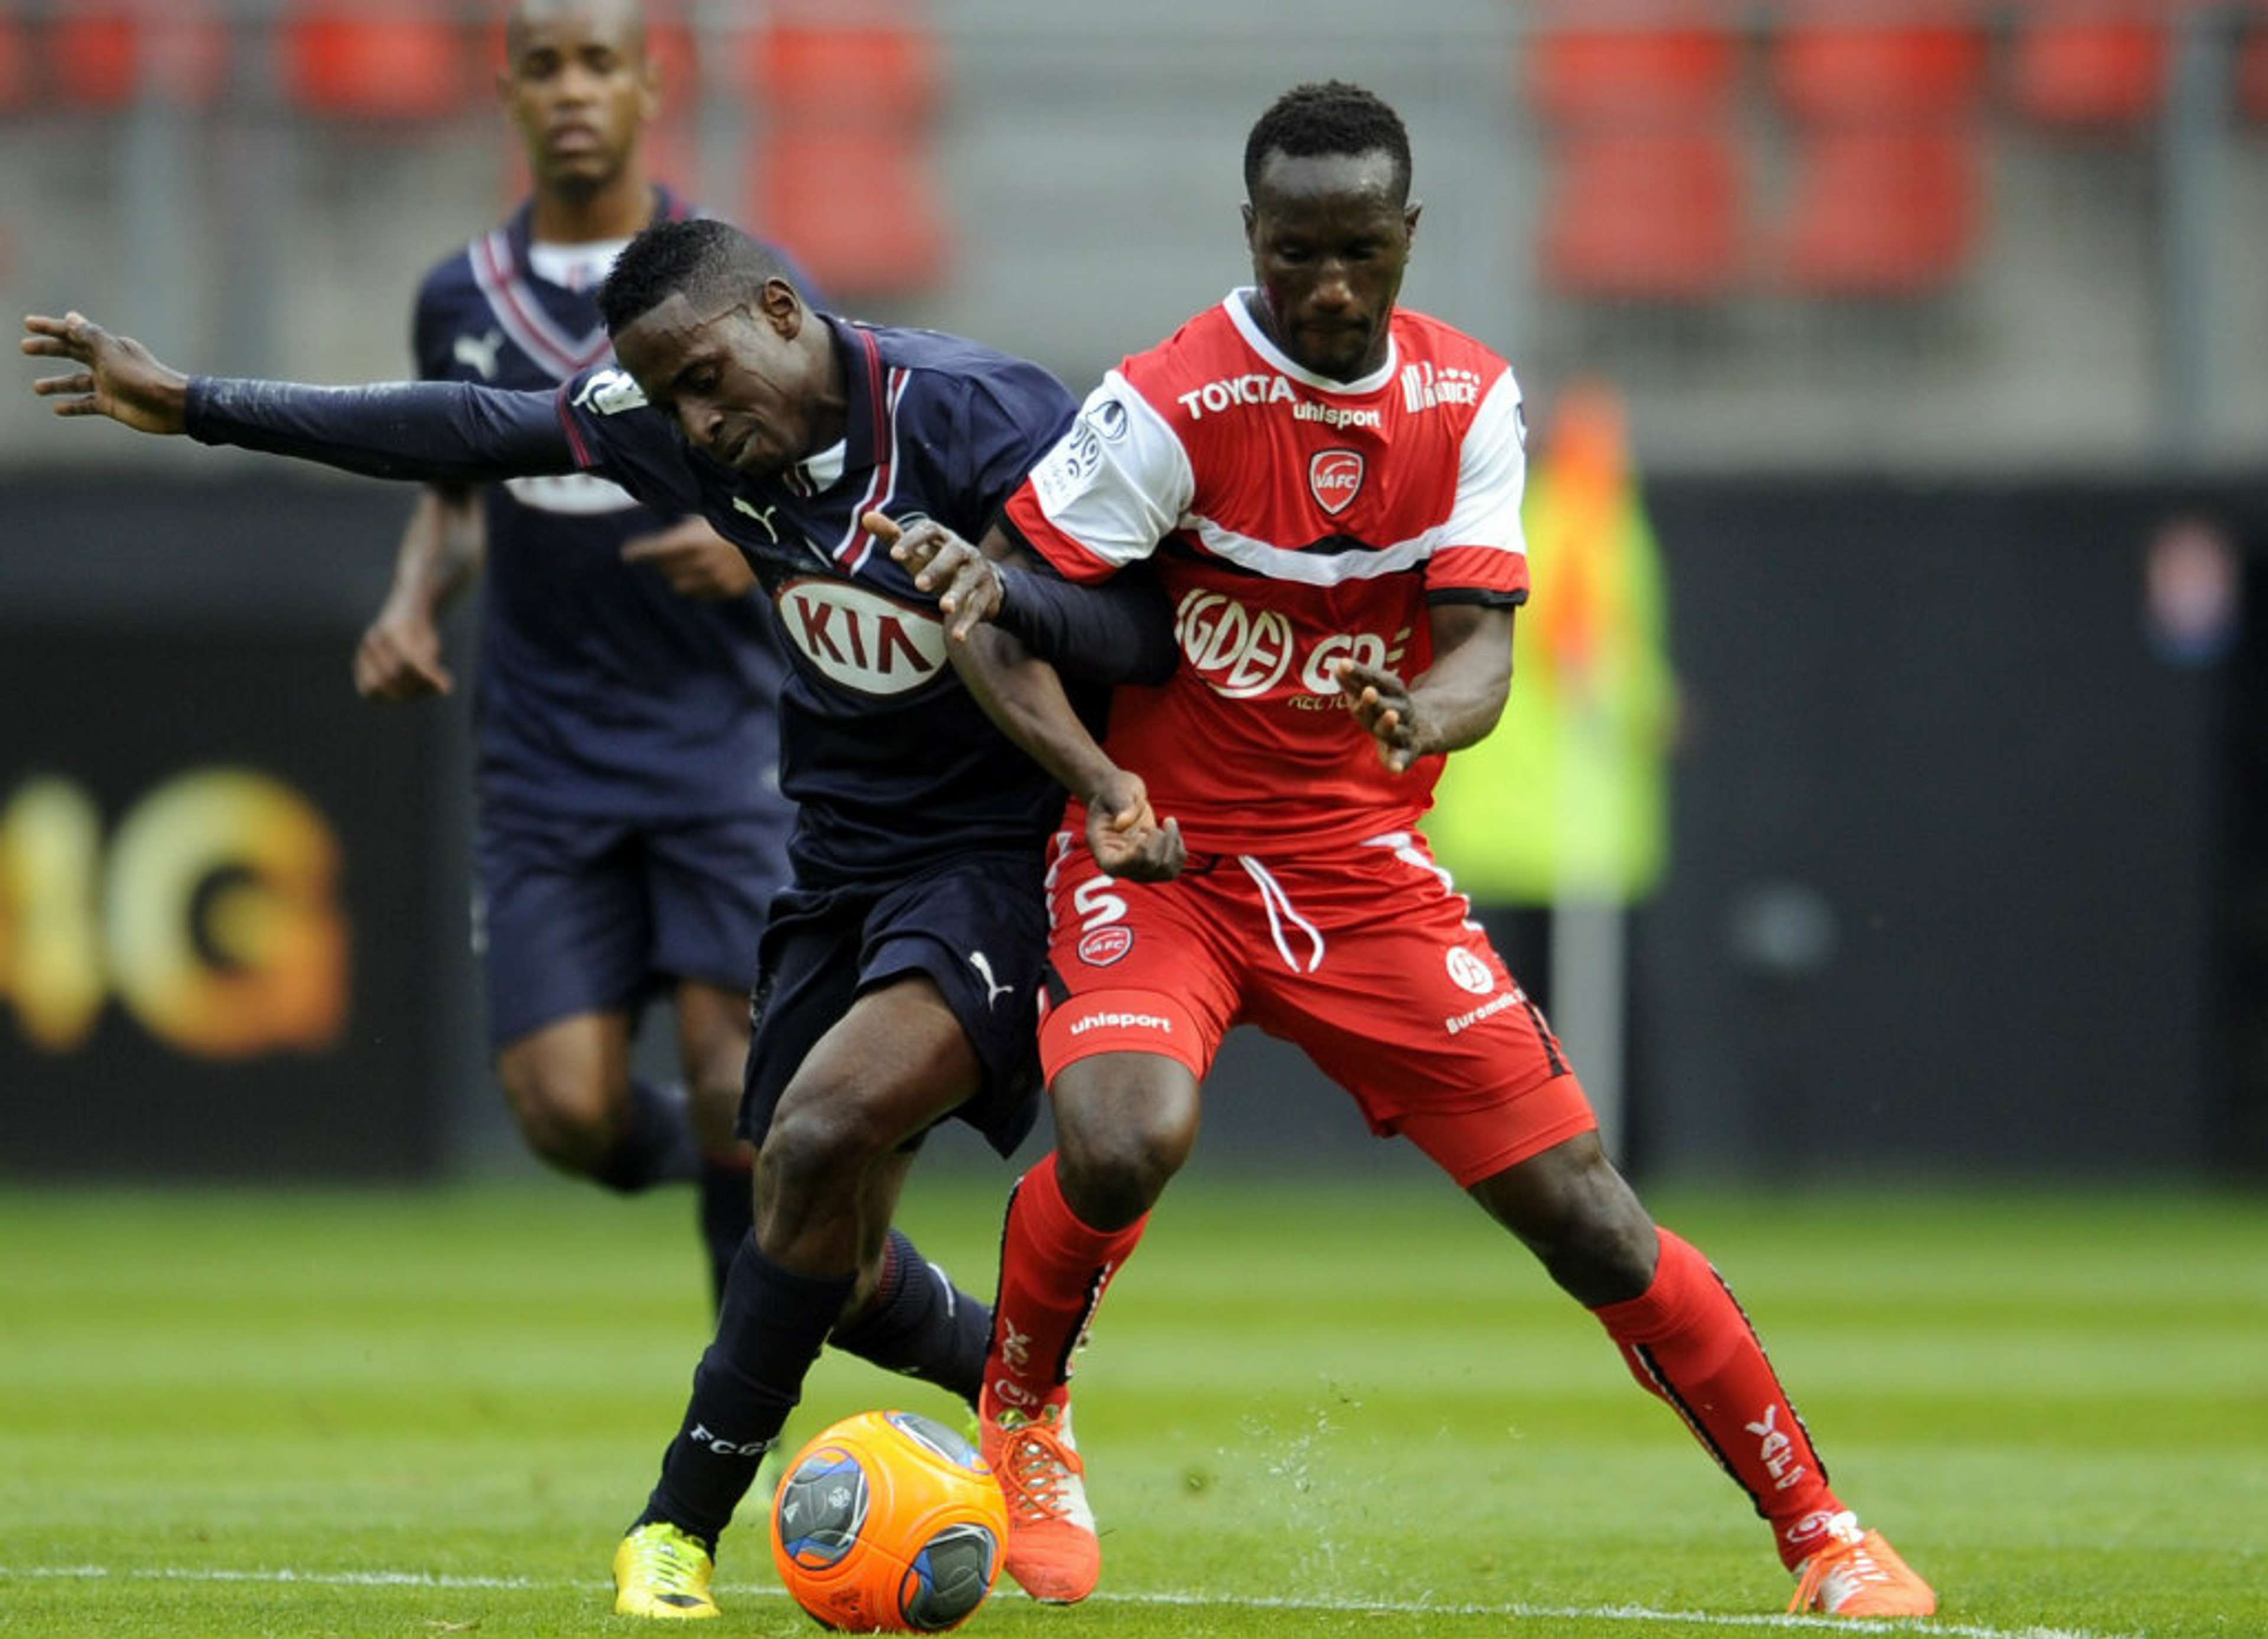 Benjamin Angoua Andre Biyogo Valenciennes Bordeaux Ligue 1 05042014